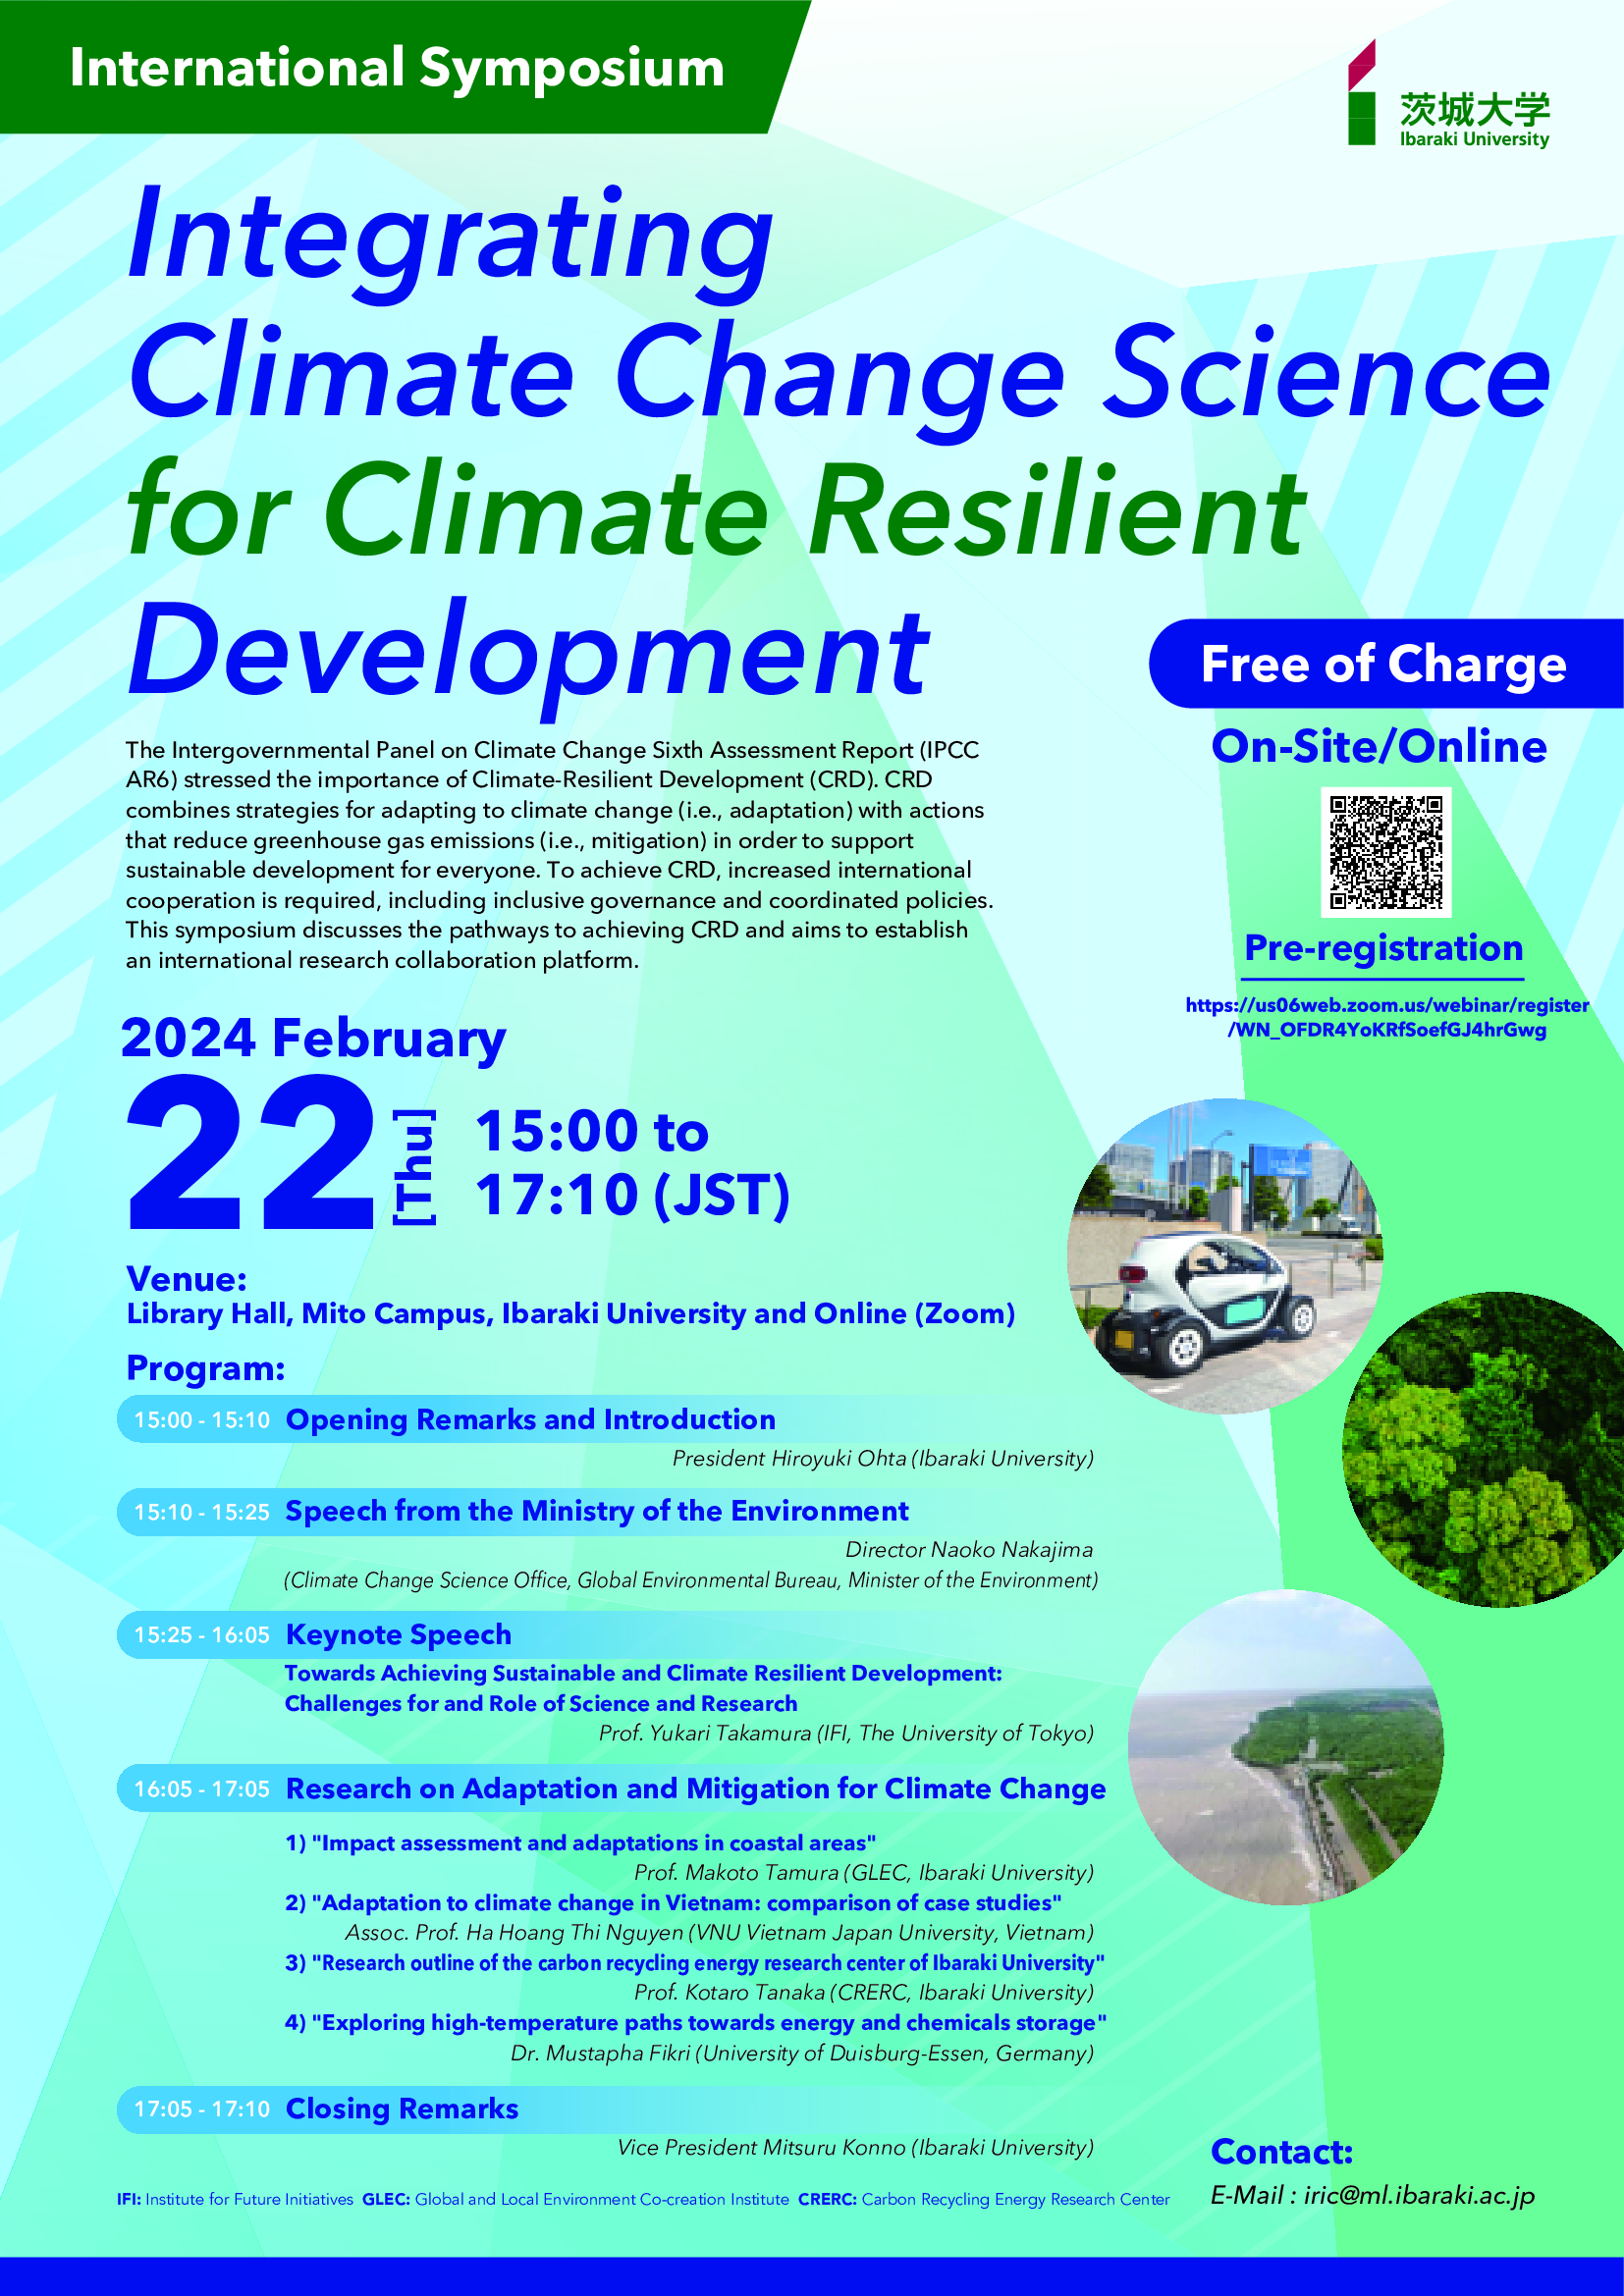 Hội thảo quốc tế từ Đại học Ibaraki: Tích hợp khoa học biến đổi khí hậu để phát triển Khả năng Chống chịu với Biến đổi Khí hậu